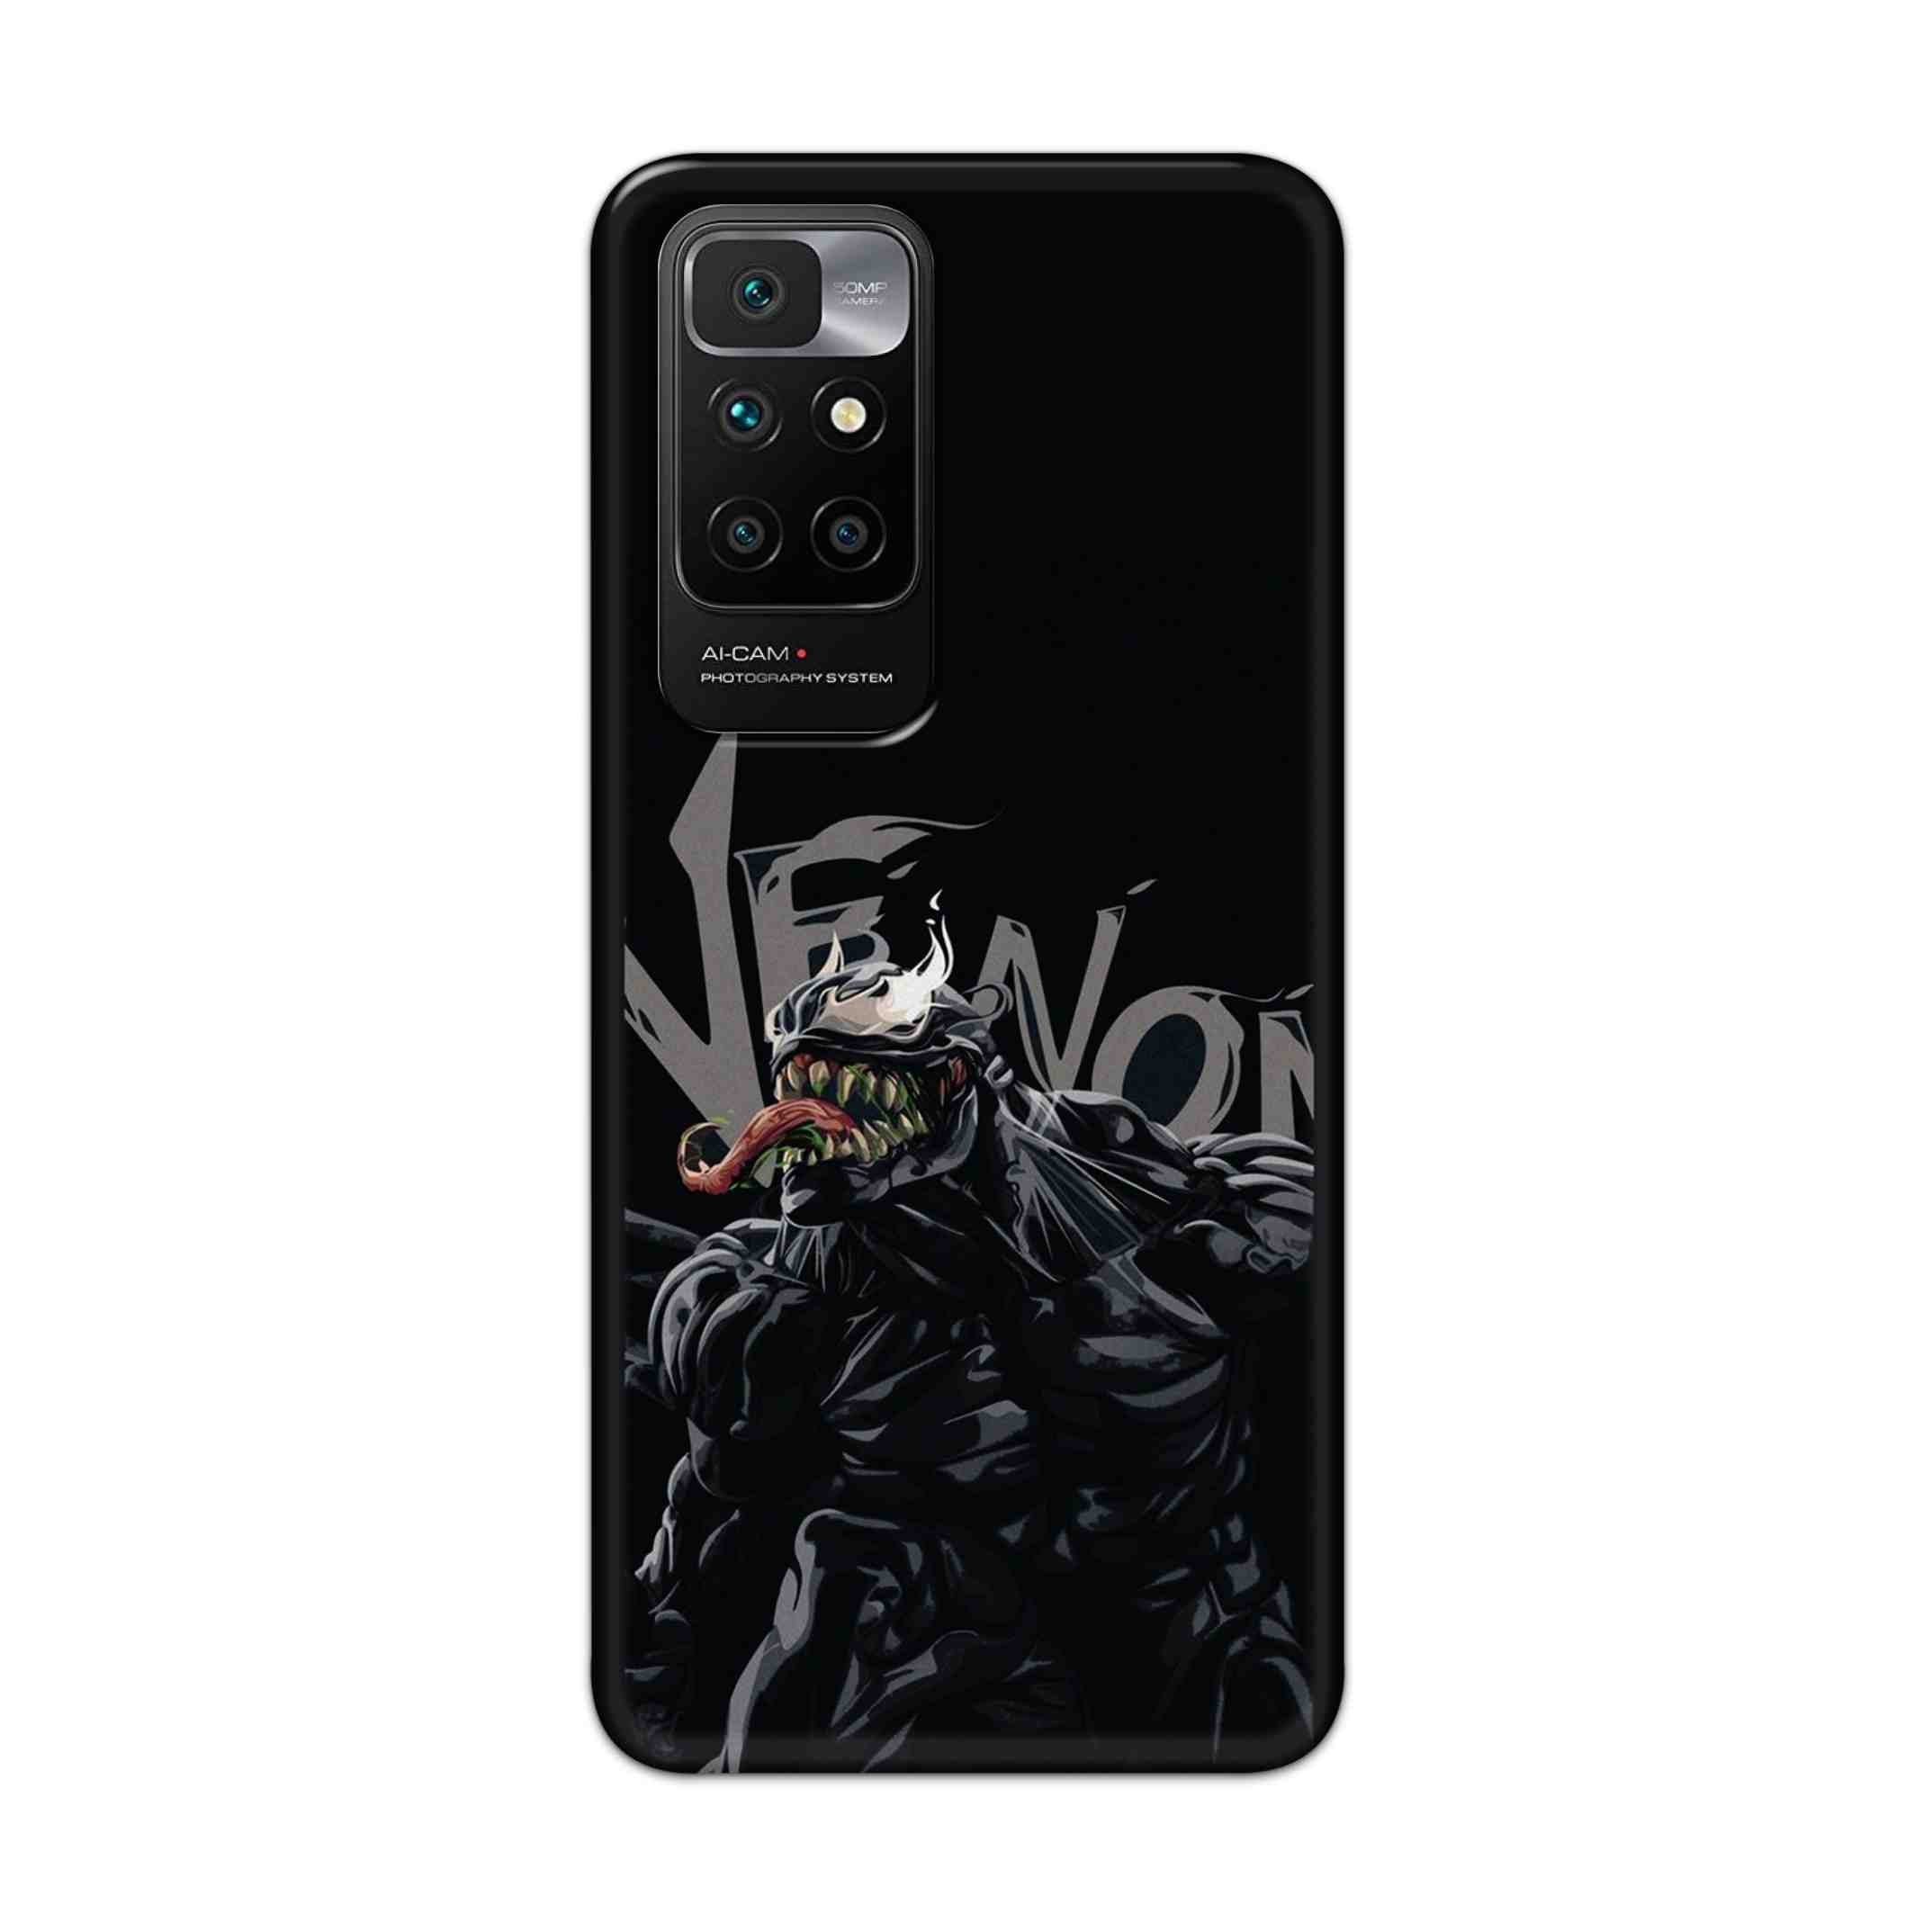 Buy  Venom Hard Back Mobile Phone Case Cover For Redmi 10 Prime Online